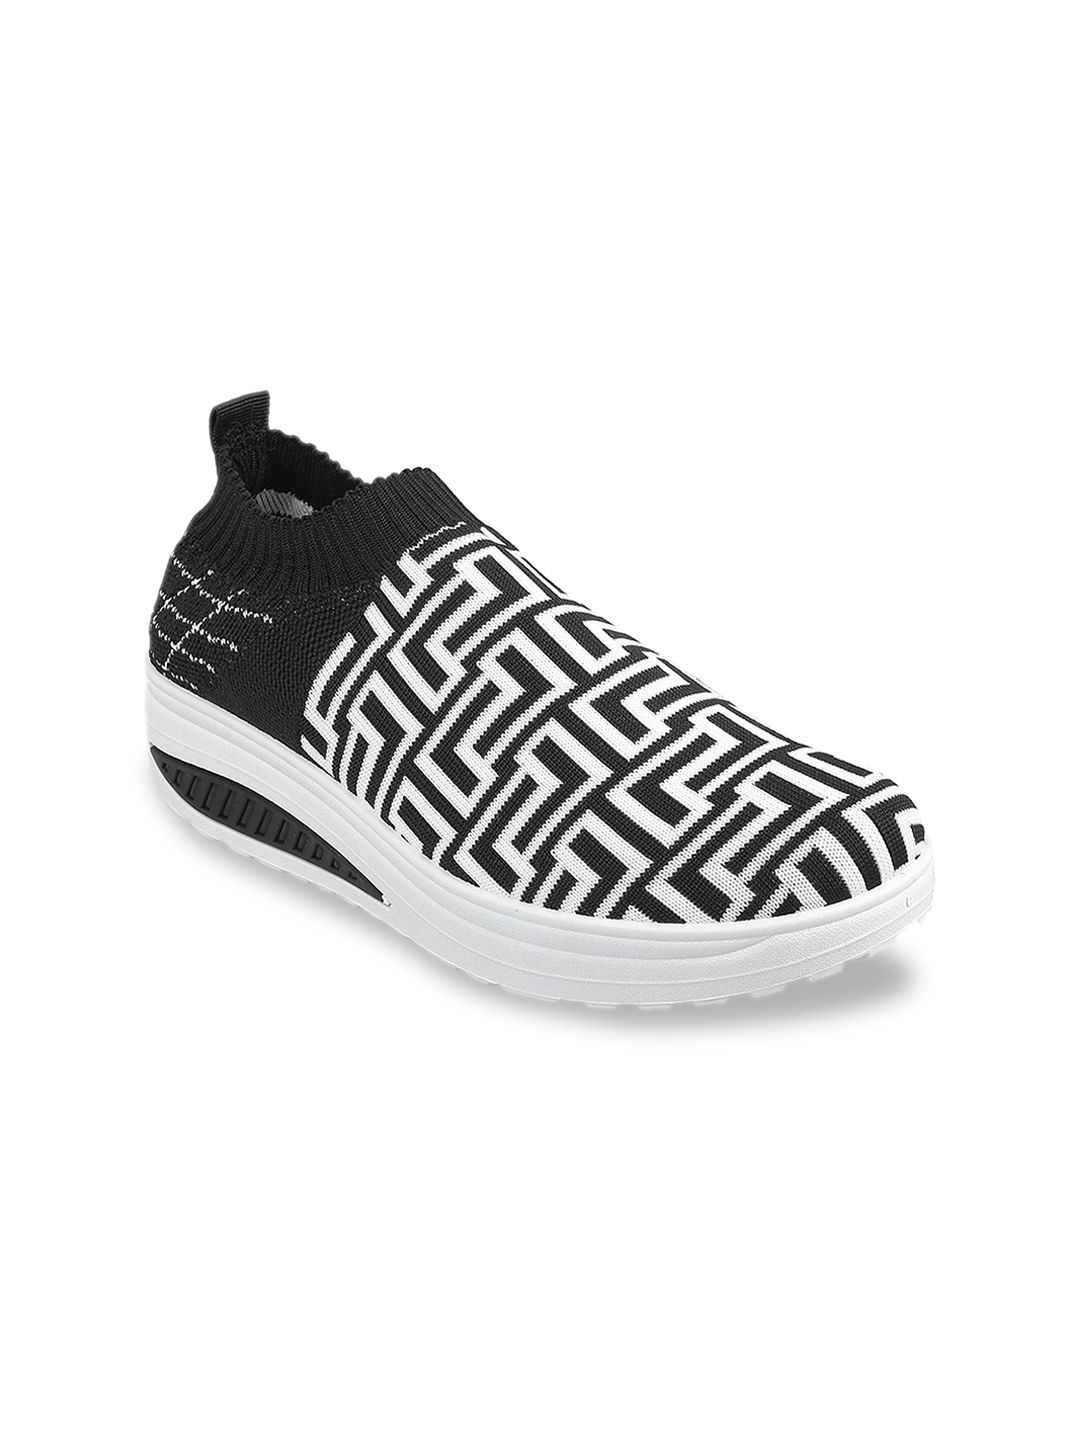 WALKWAY by Metro Women Black & White Printed Slip-On Sneakers Price in India